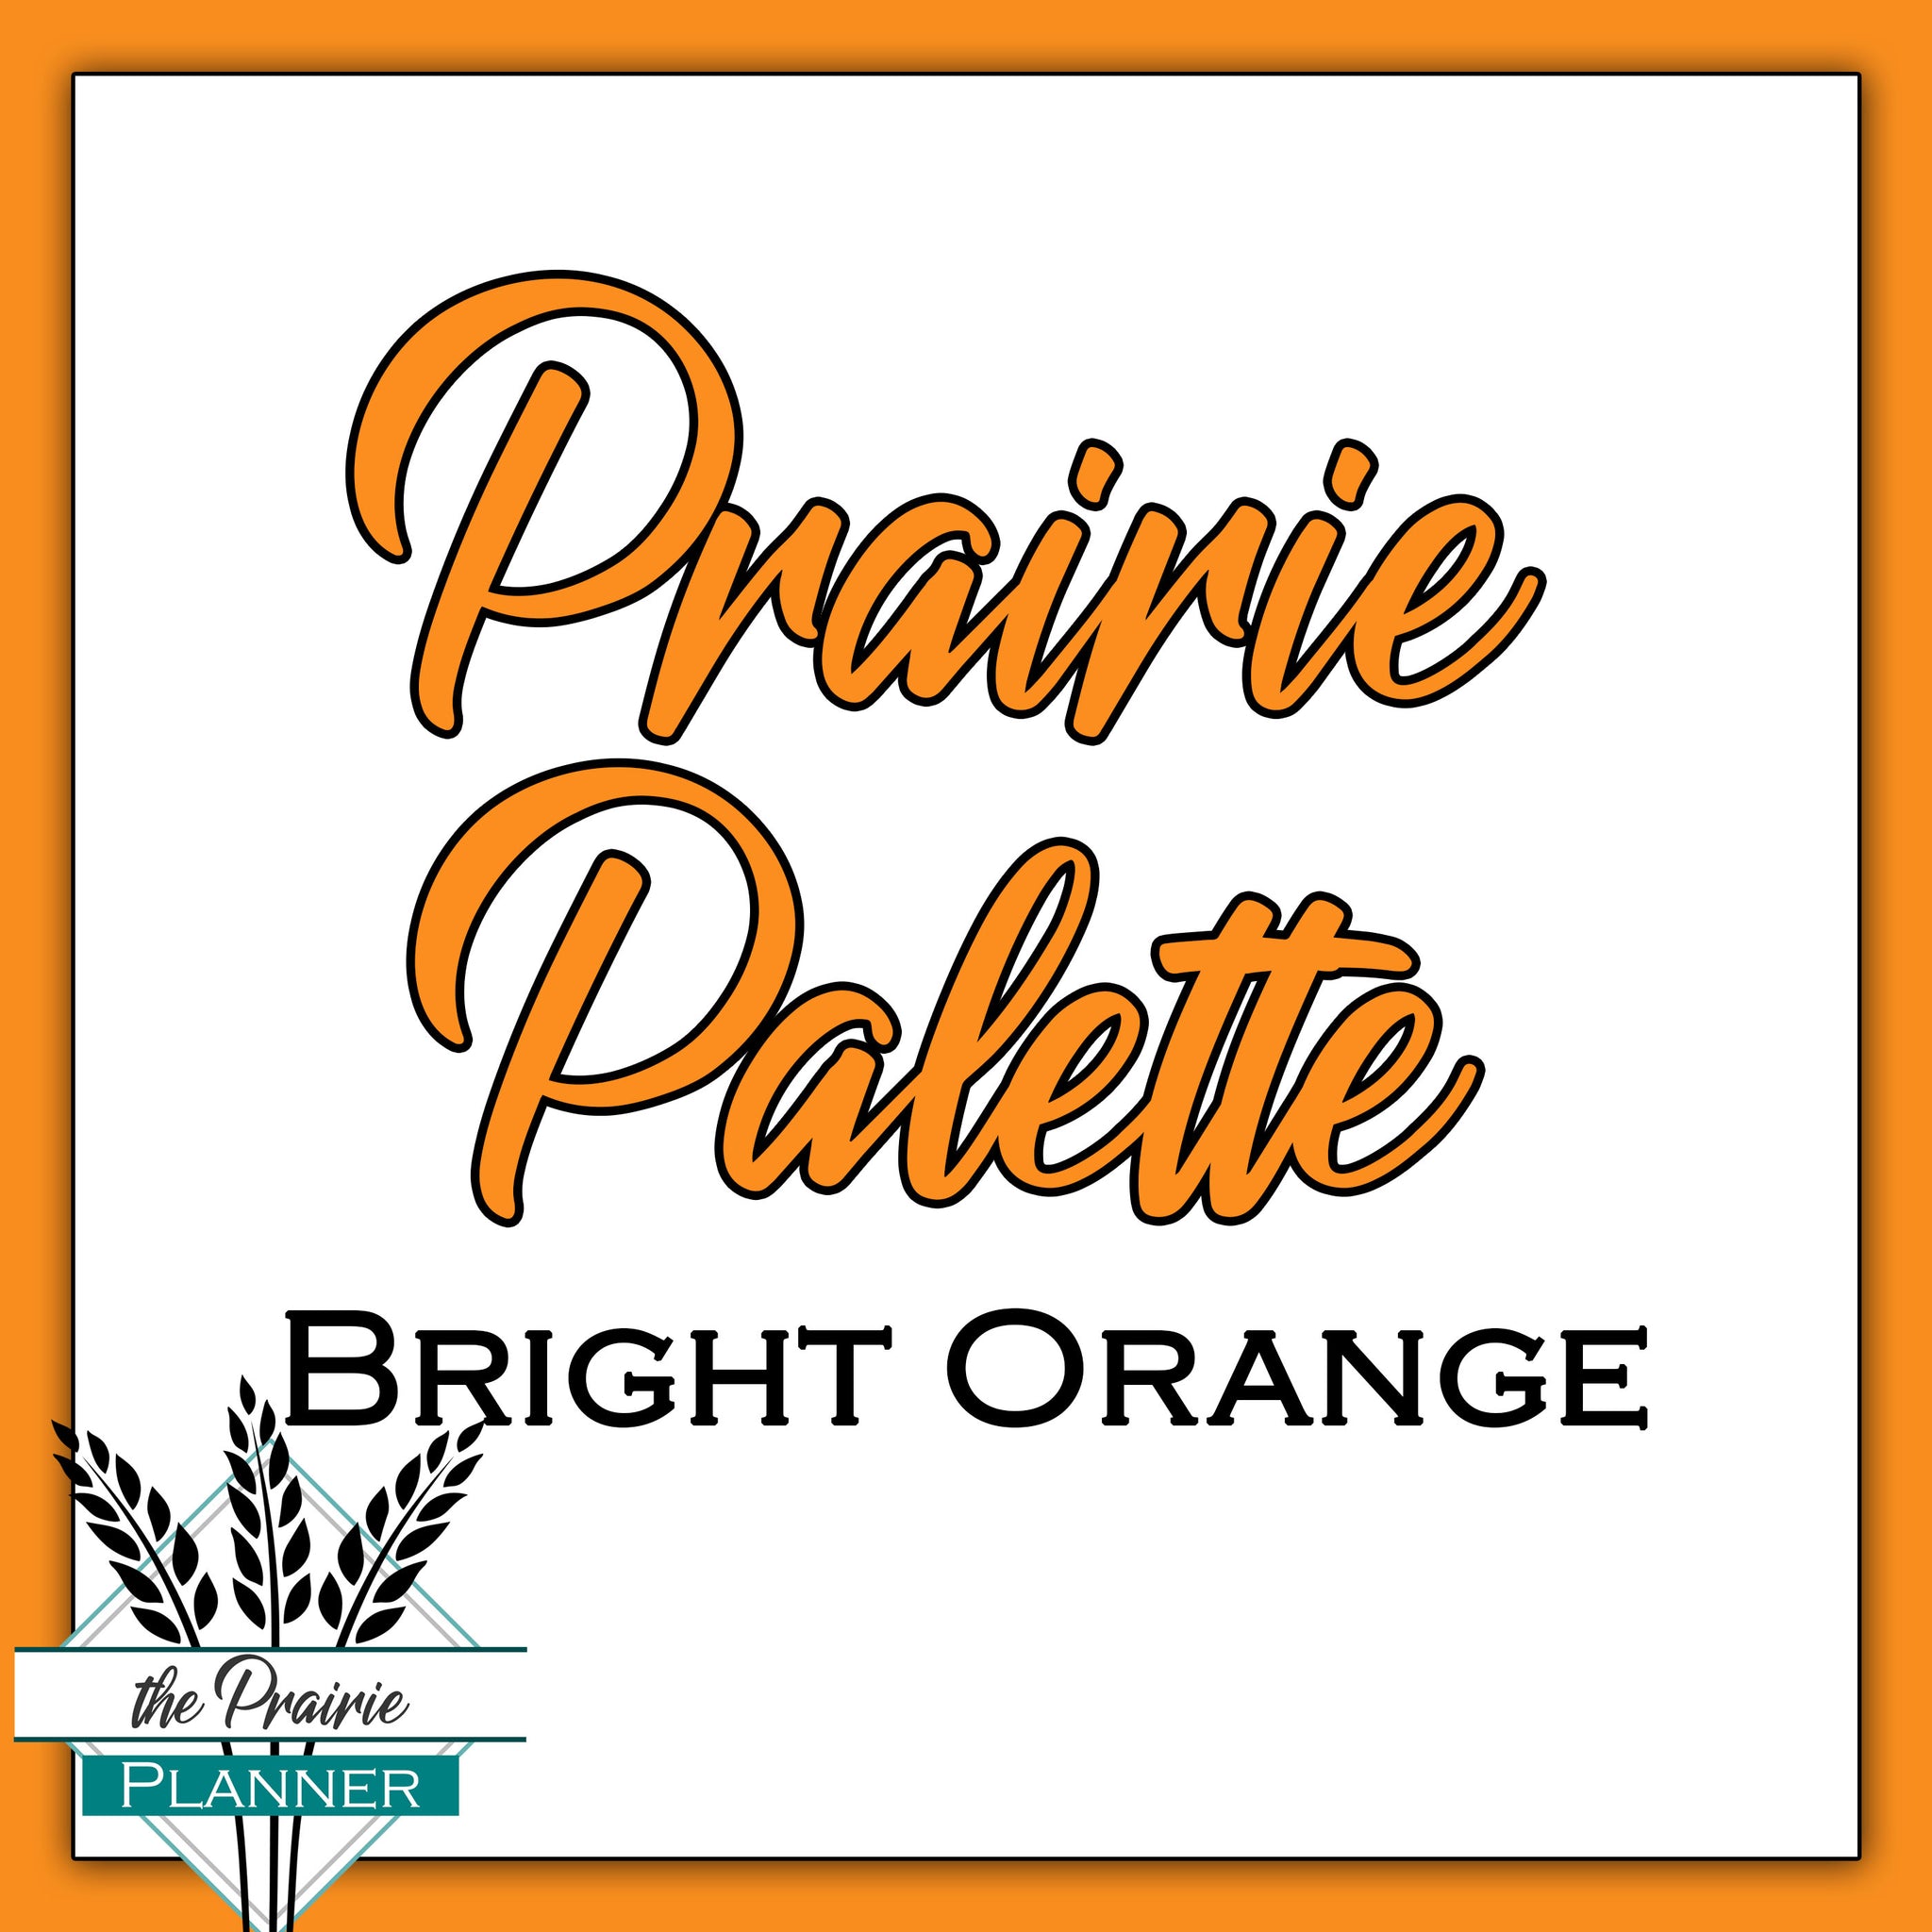 Prairie Palette - Bright Orange